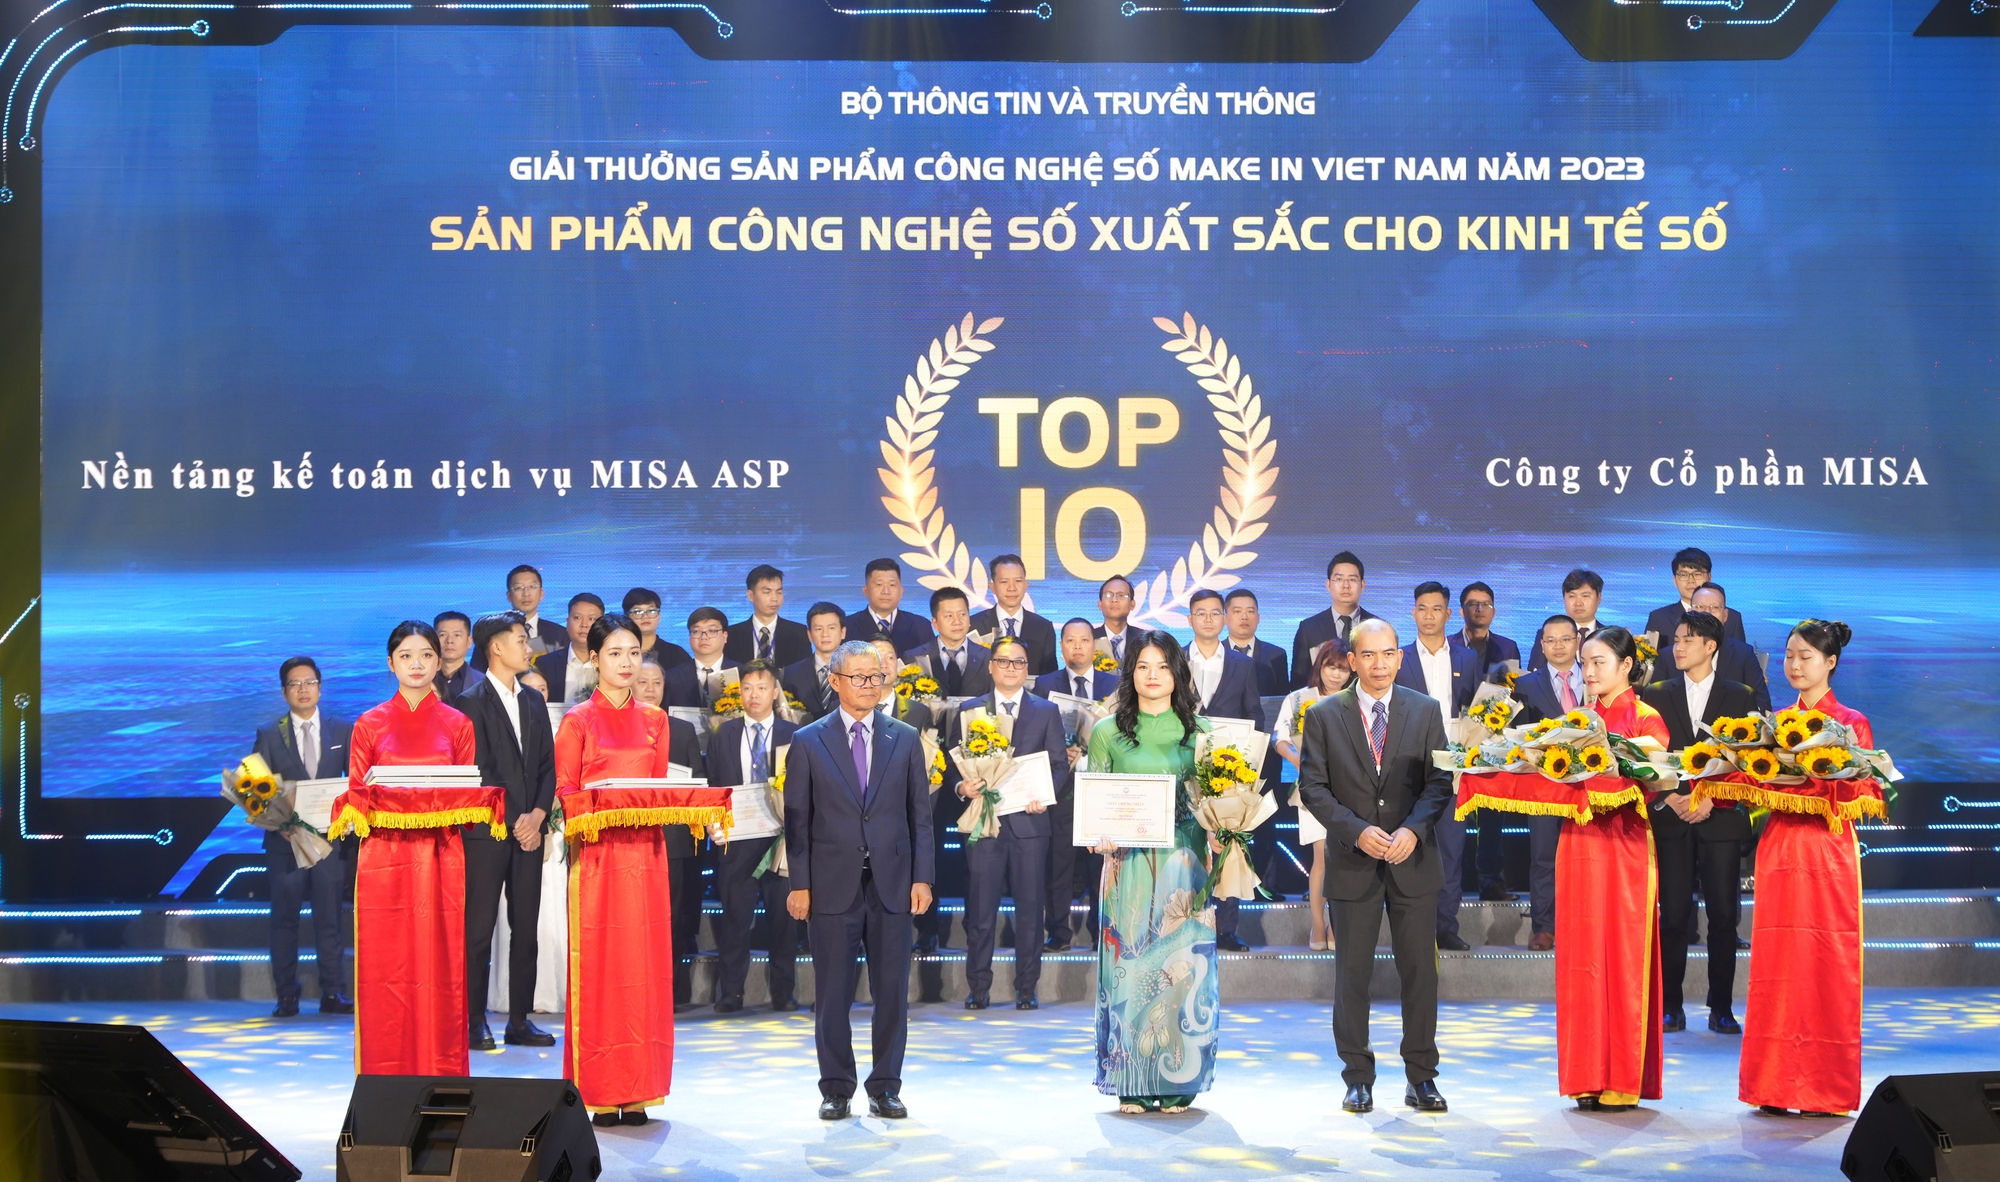 Hai giải pháp MISA được vinh danh là sản phẩm công nghệ số xuất sắc Make in Viet Nam 2023- Ảnh 2.